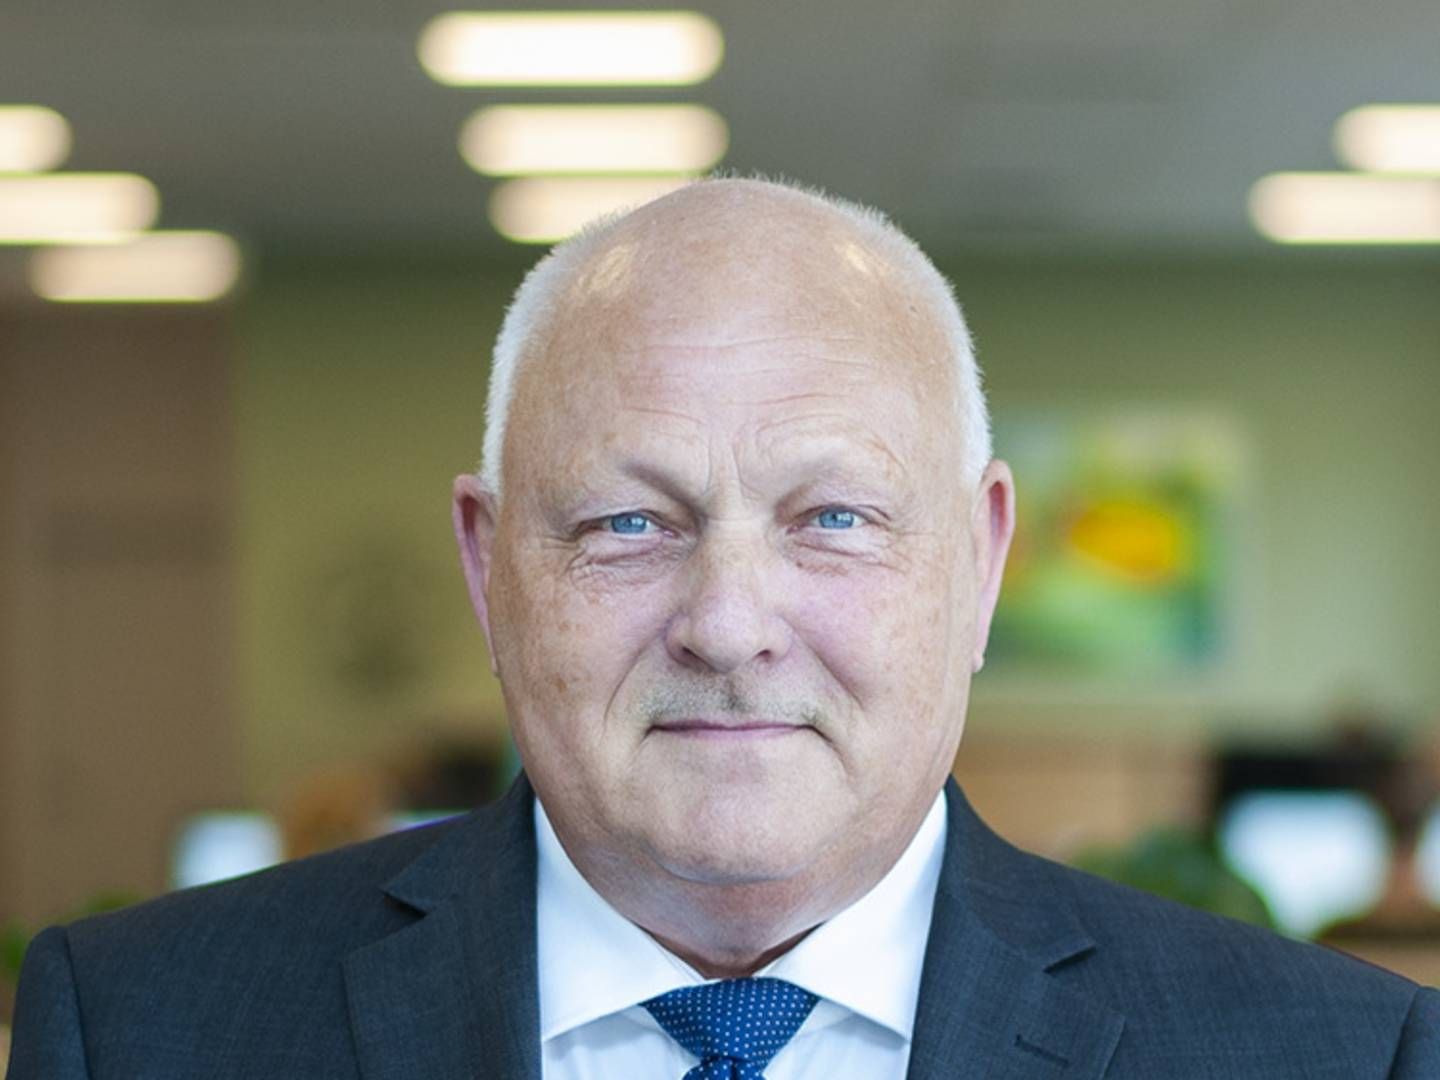 Adm. direktør i Nordfyns Bank, Holger Bruun. | Foto: PR/Nordfyns Bank